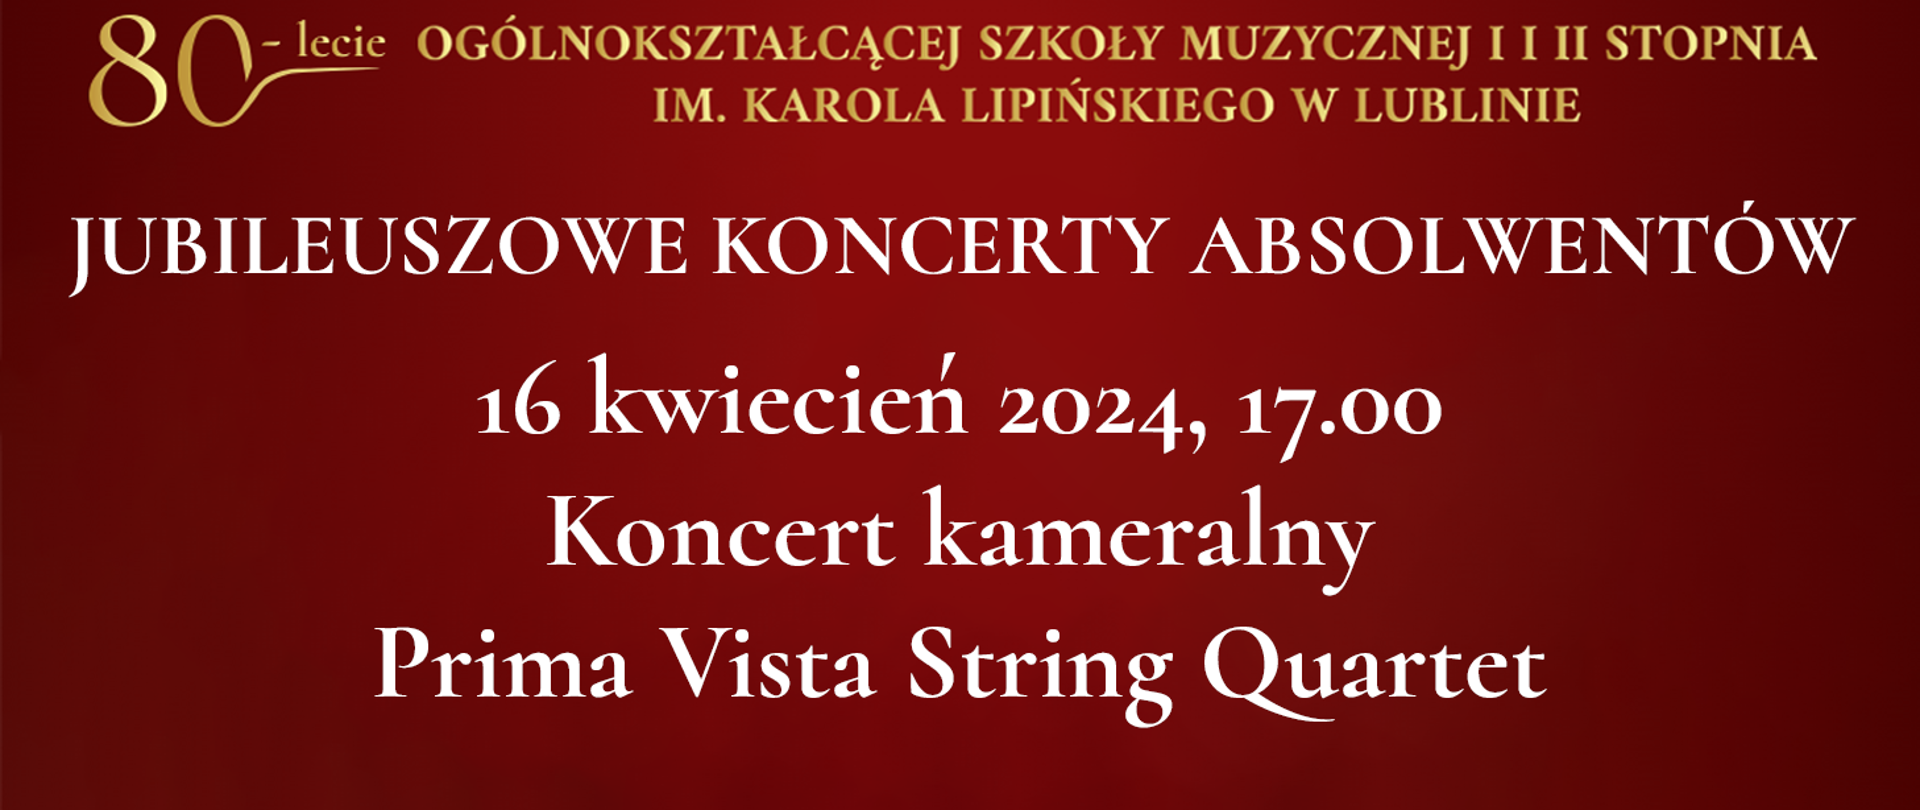 Na bordowo czerwonym tle widnieje tekst napisany złotym kolorem: 80 lecie Ogólnokształcącej Szkoły Muzycznej I i II stopnia im. Karola Lipińskiego w Lublinie. Poniżej białymi literami napis: JUBILEUSZOWE KONCERTY ABSOLWENTÓW, 16 kwiecień 2024, godz. 17.00 Koncert kameralny Prima Vista String Quartet